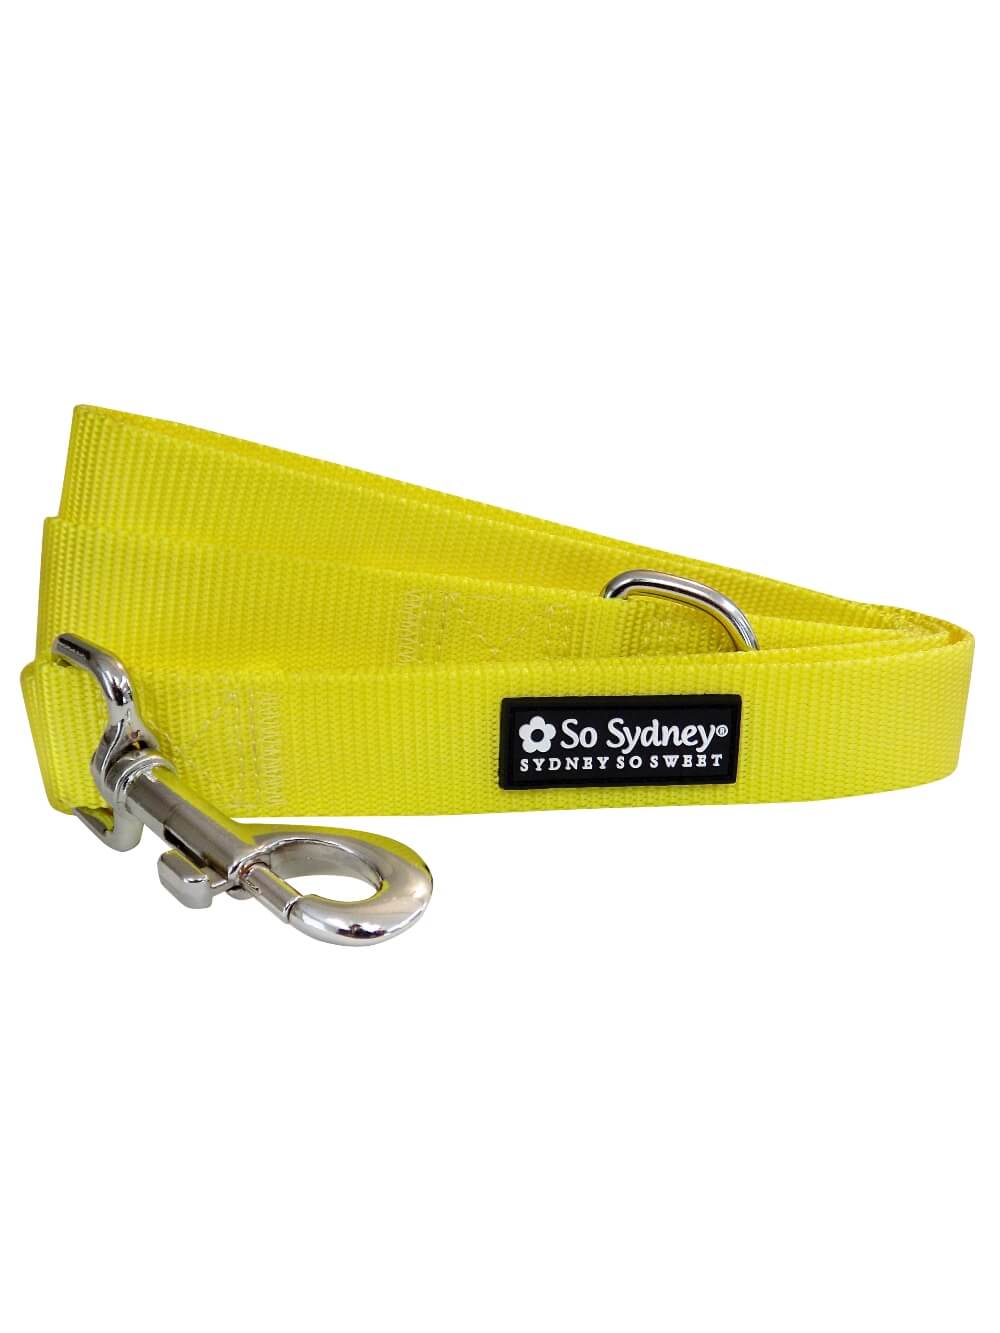 Yellow Basic Nylon Dog Leash for Small, Medium, or Large Dogs - Sydney So Sweet